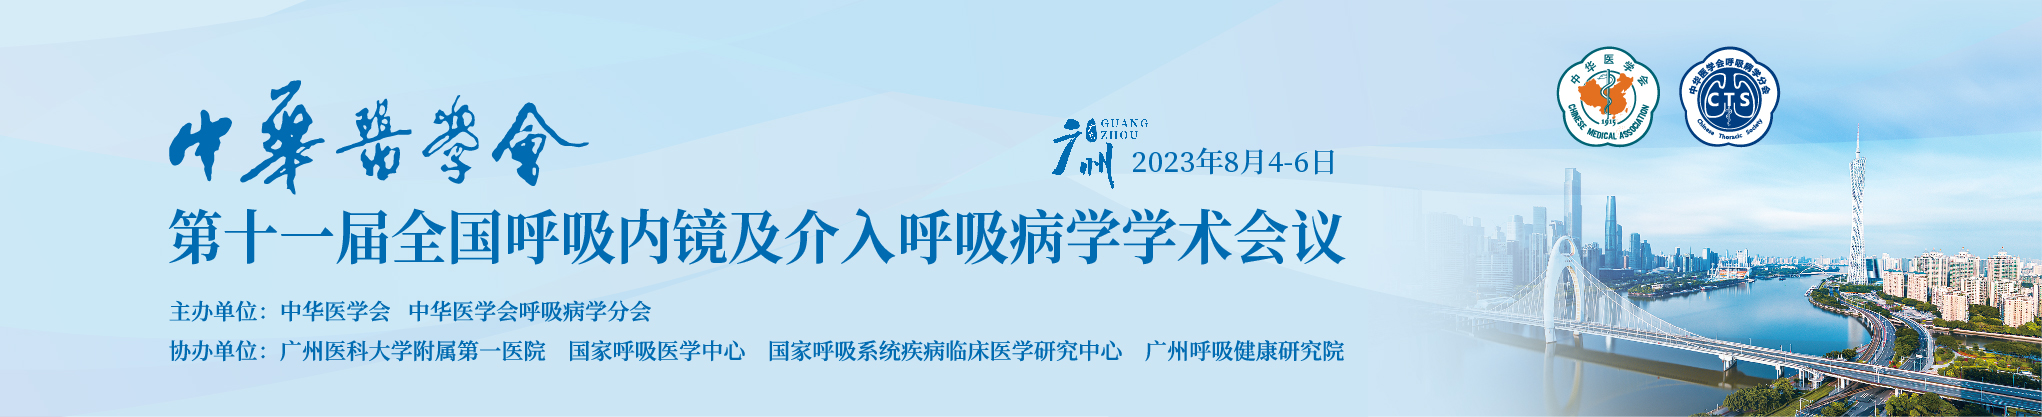 中华医学会第十一届全国呼吸内镜及介入呼吸病学学术会议